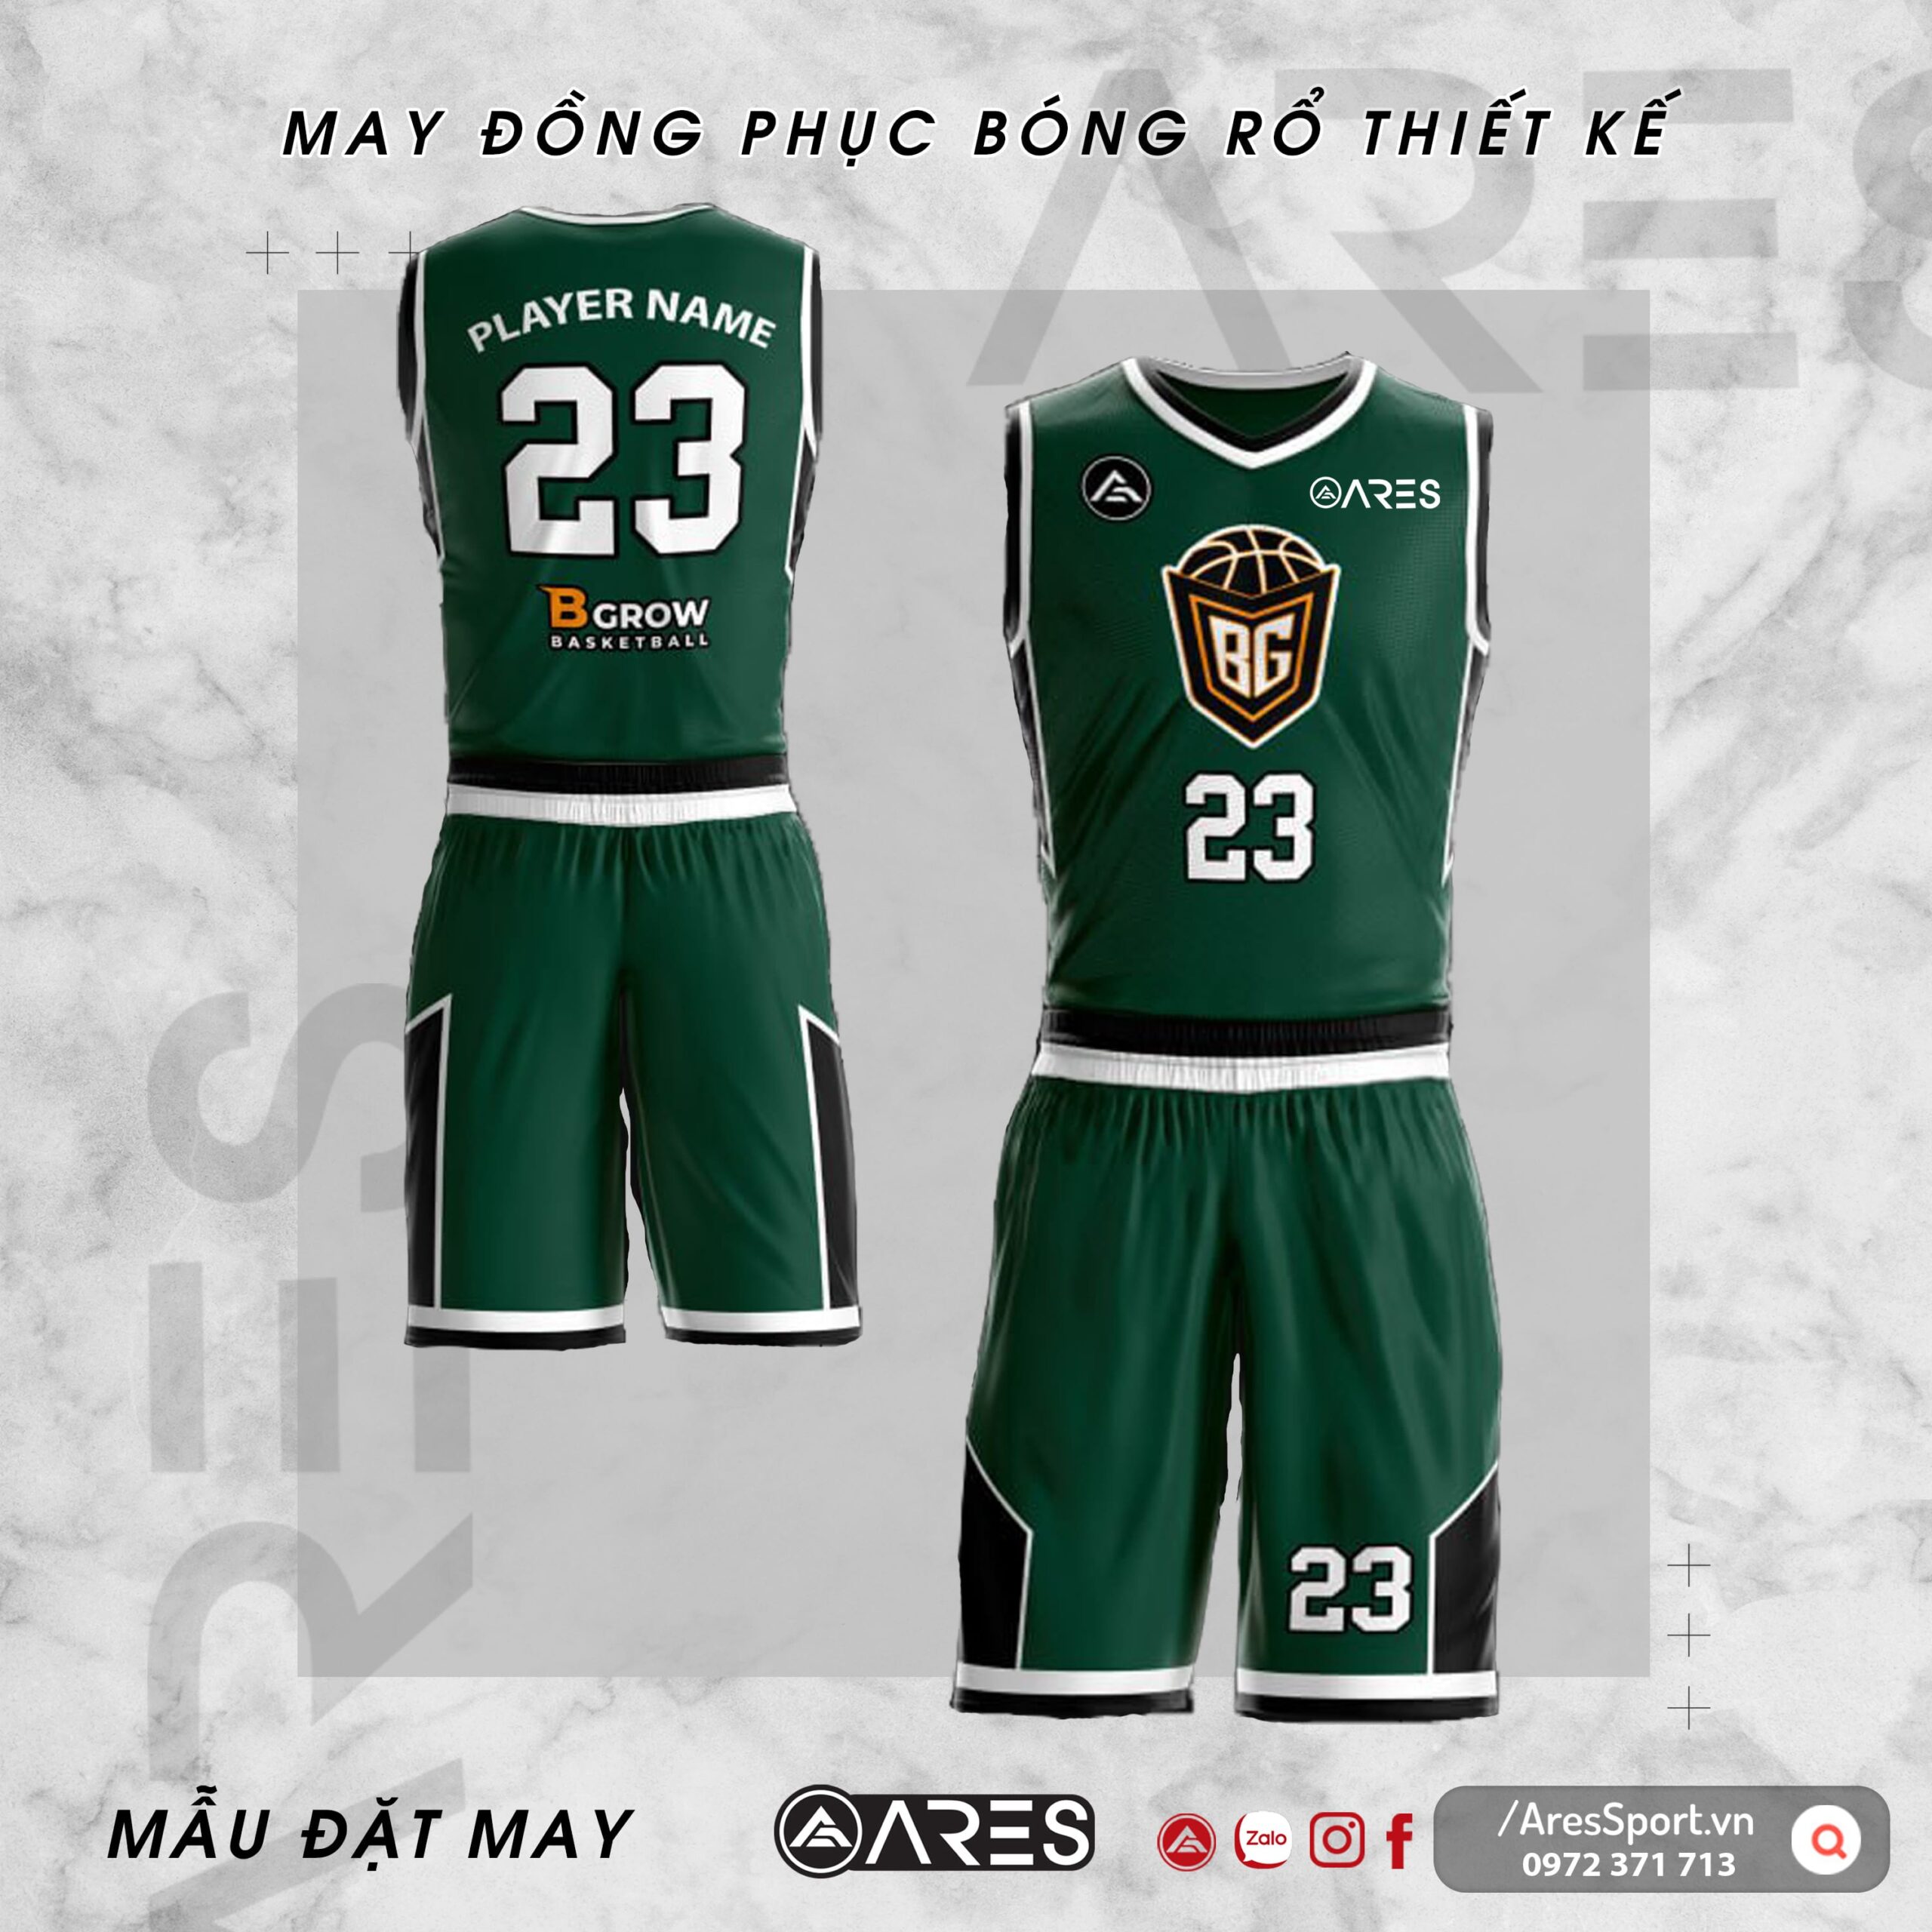 Đồng phục bóng rổ thiết kế Bgrow xanh lá đậm thanh lịch